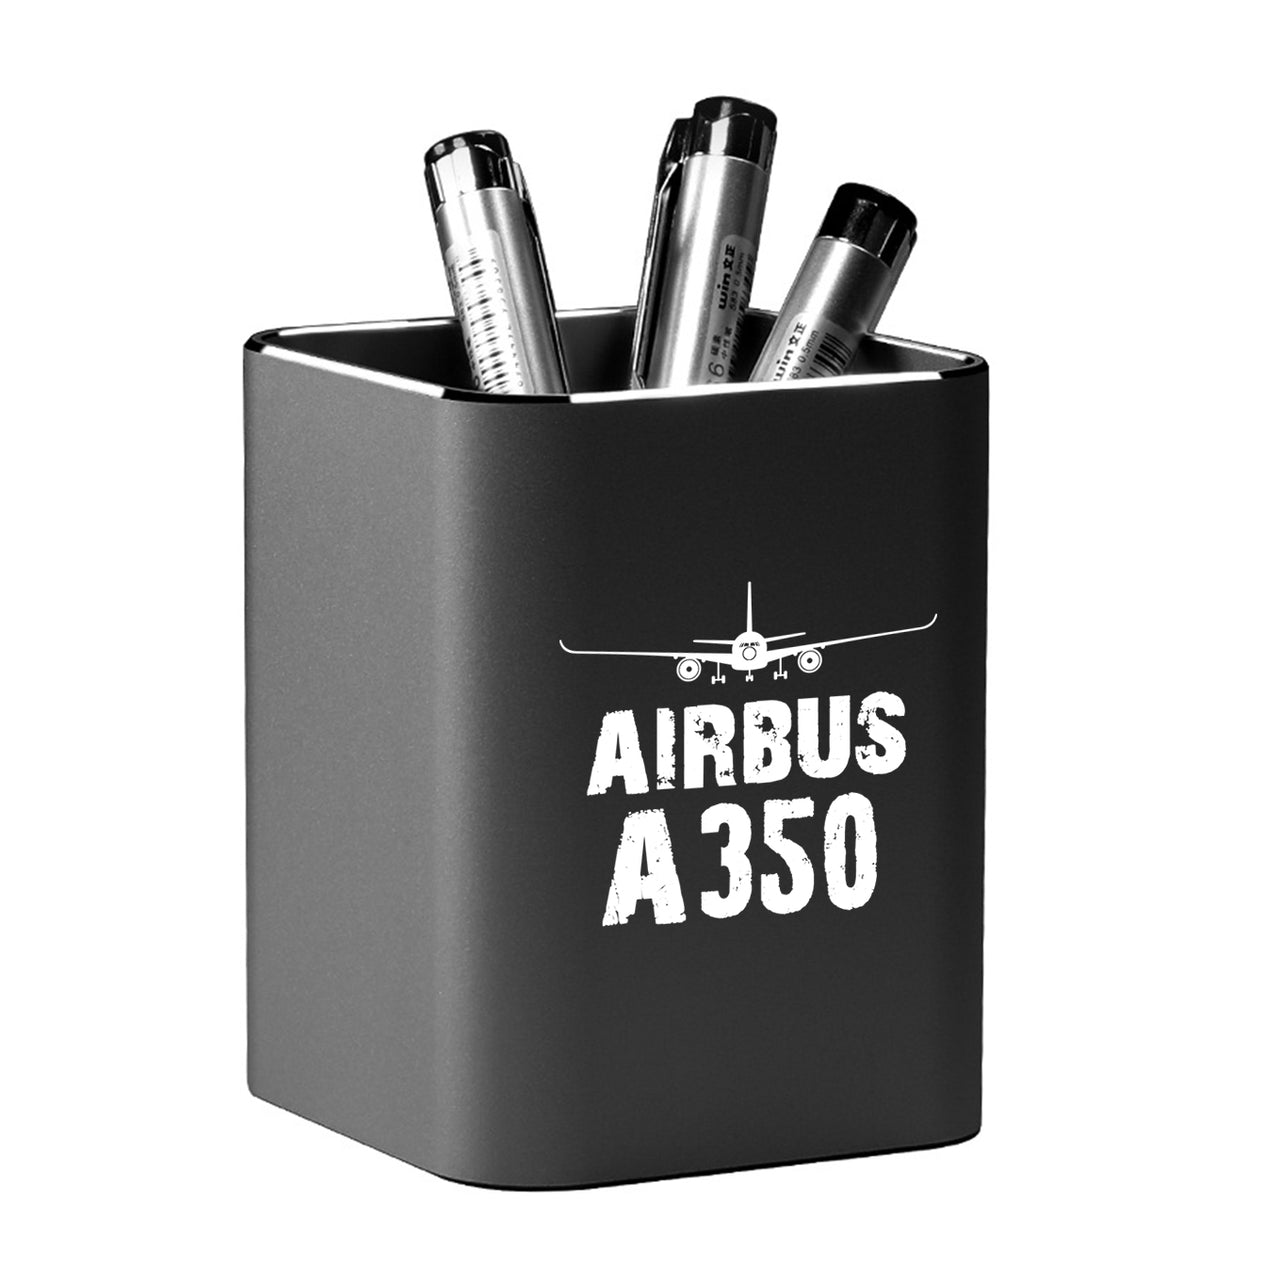 Airbus A350 & Plane Designed Aluminium Alloy Pen Holders